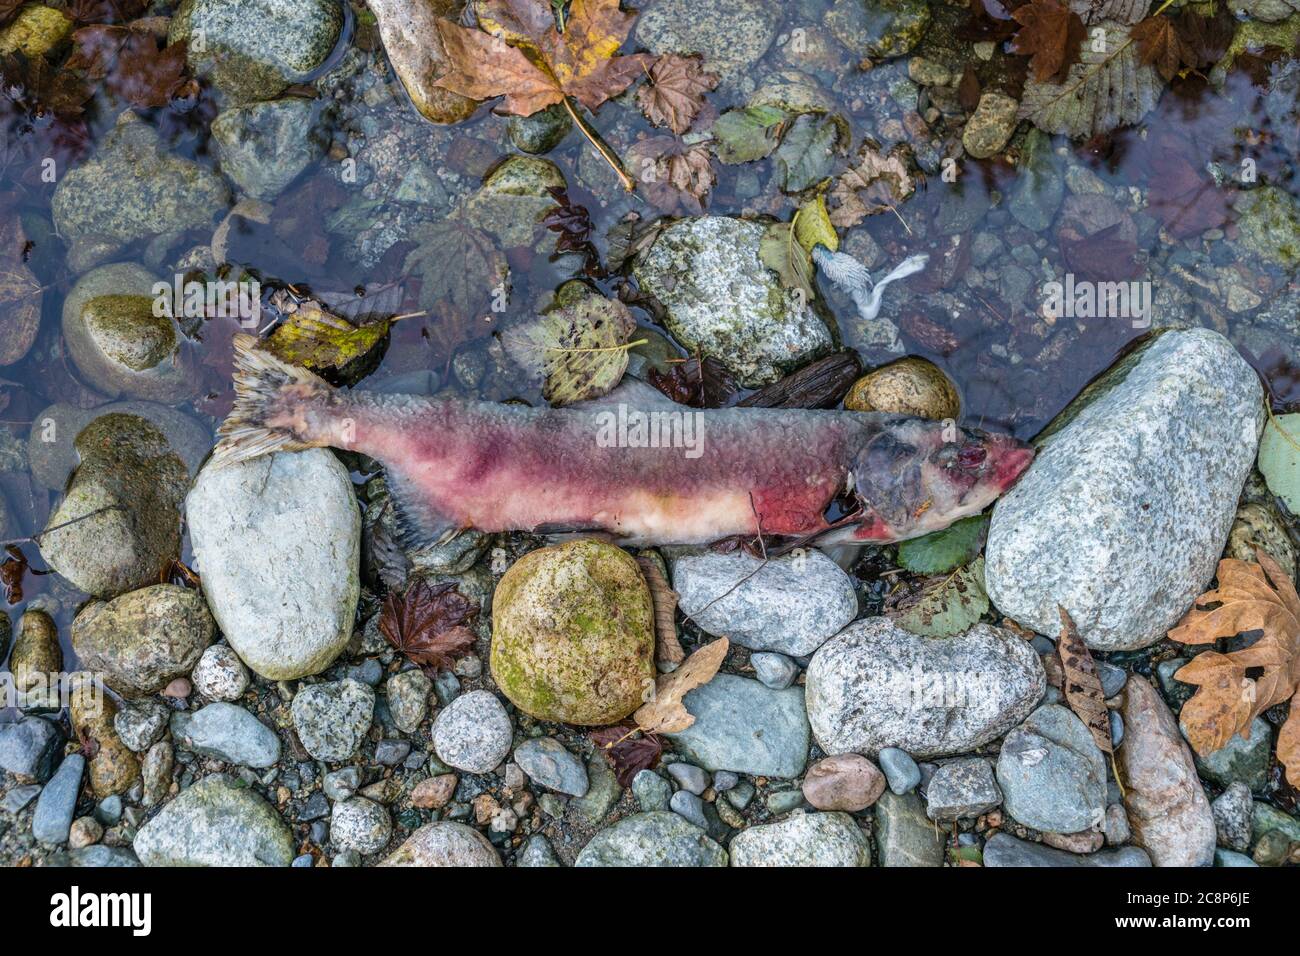 Squamish, BC/Kanada-5. Oktober 2019: Toter Lachs im Stawamus River nach dem Lachslauf oder Lachszug. Diese Fische reisen viele Meilen Upstrea Stockfoto